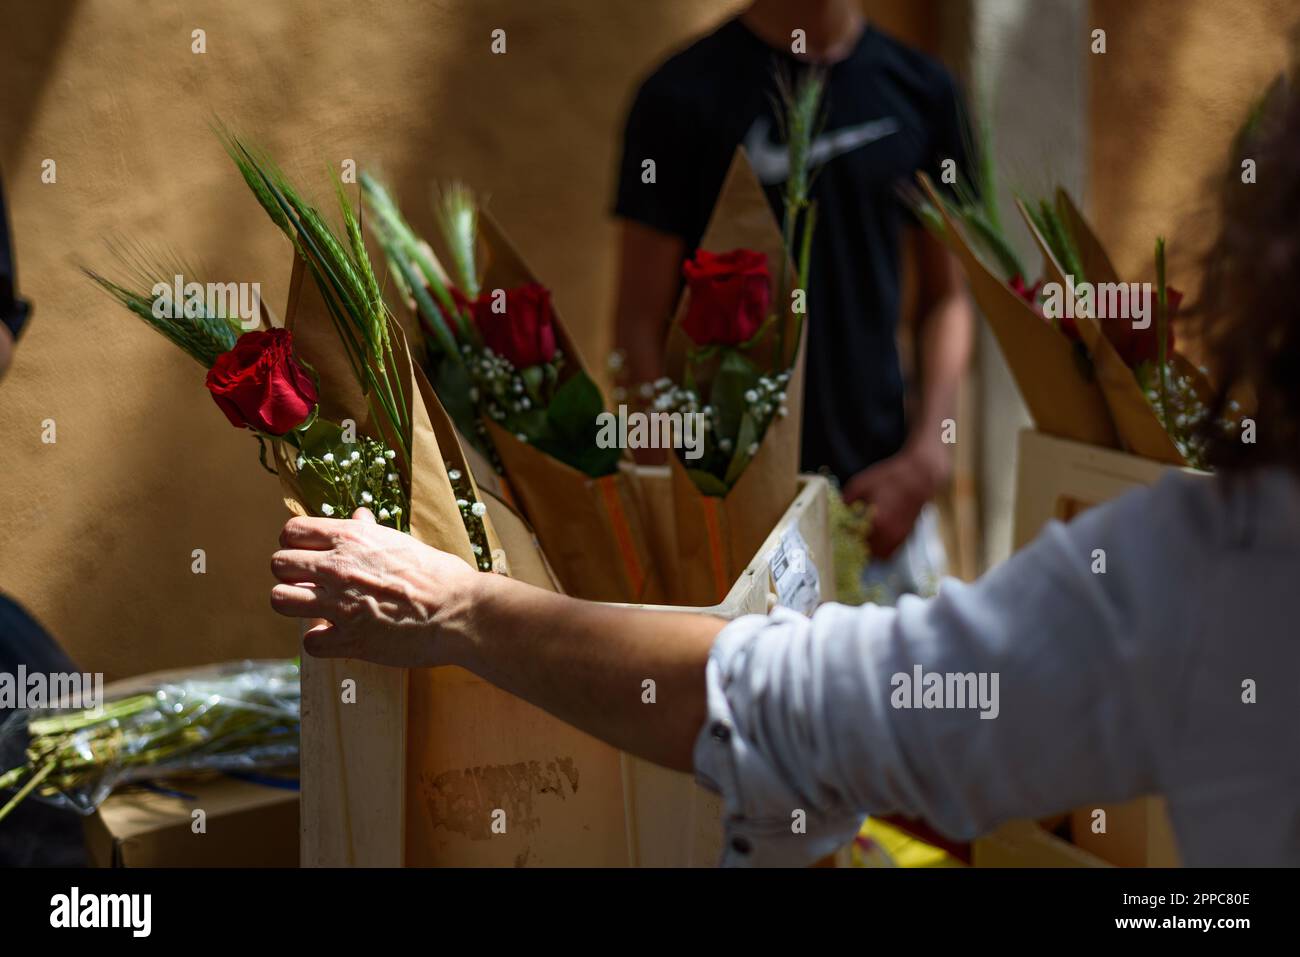 Barcelone, Espagne. 23rd avril 2023. Un gros plan de la main d'une femme qui achète des roses rouges pendant la fête catalane traditionnelle du jour de Saint George. Ce jour-là, connu sous le nom de « jour de Saint-Georges » (Diada de Sant Jordi en catalan), l'amour et la littérature sont célébrés par la vente de livres et de roses rouges dans tout le pays. Depuis l'année 1997, le slogan officiel de ce jour a été "Une rose pour l'amour, et un livre pour toujours". Crédit : SOPA Images Limited/Alamy Live News Banque D'Images